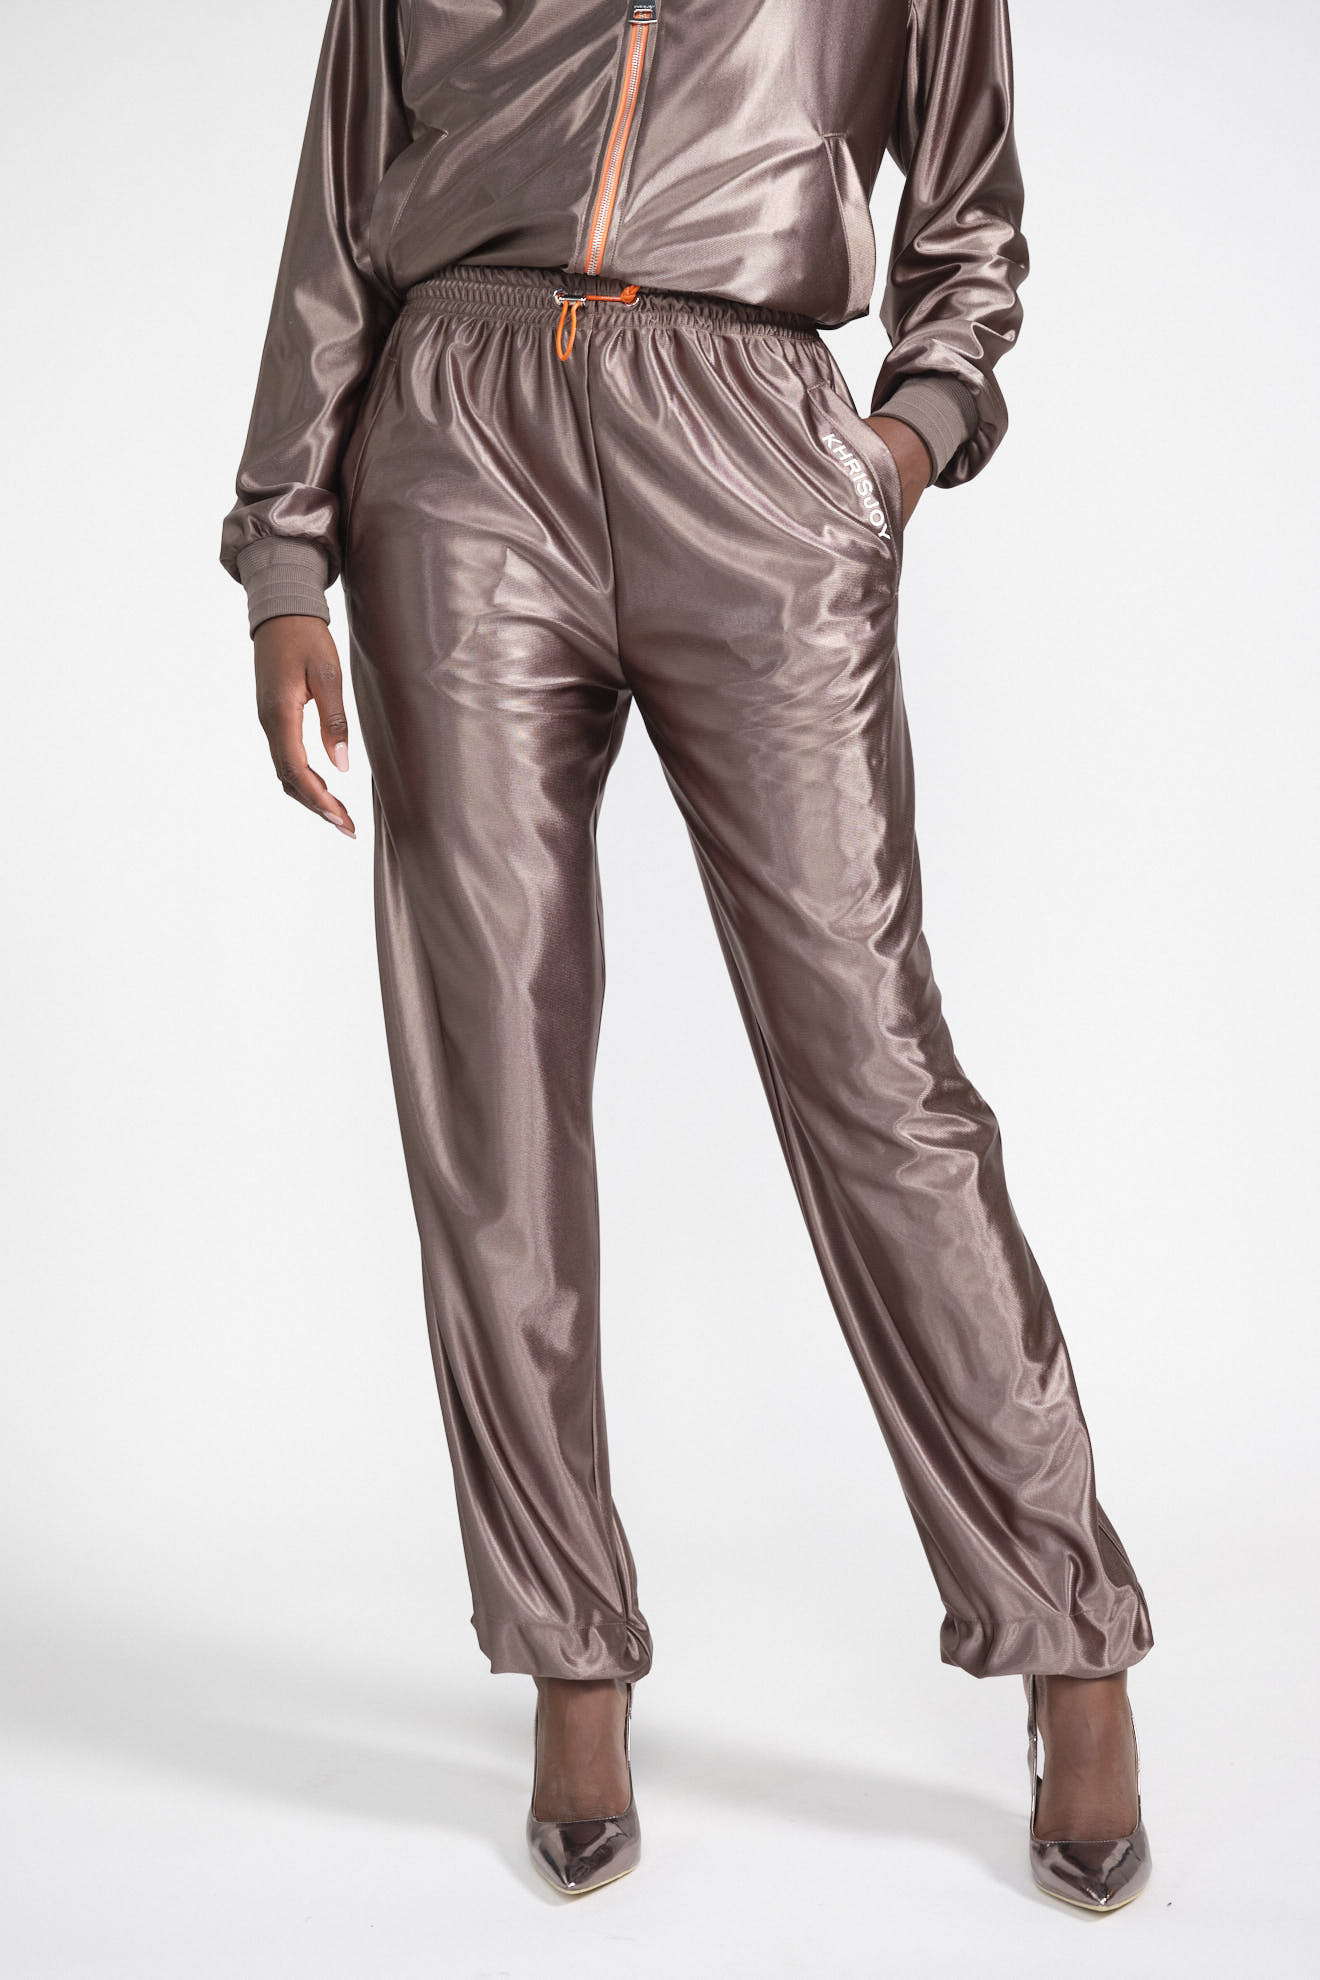 khrisjoy pants brown plain leather